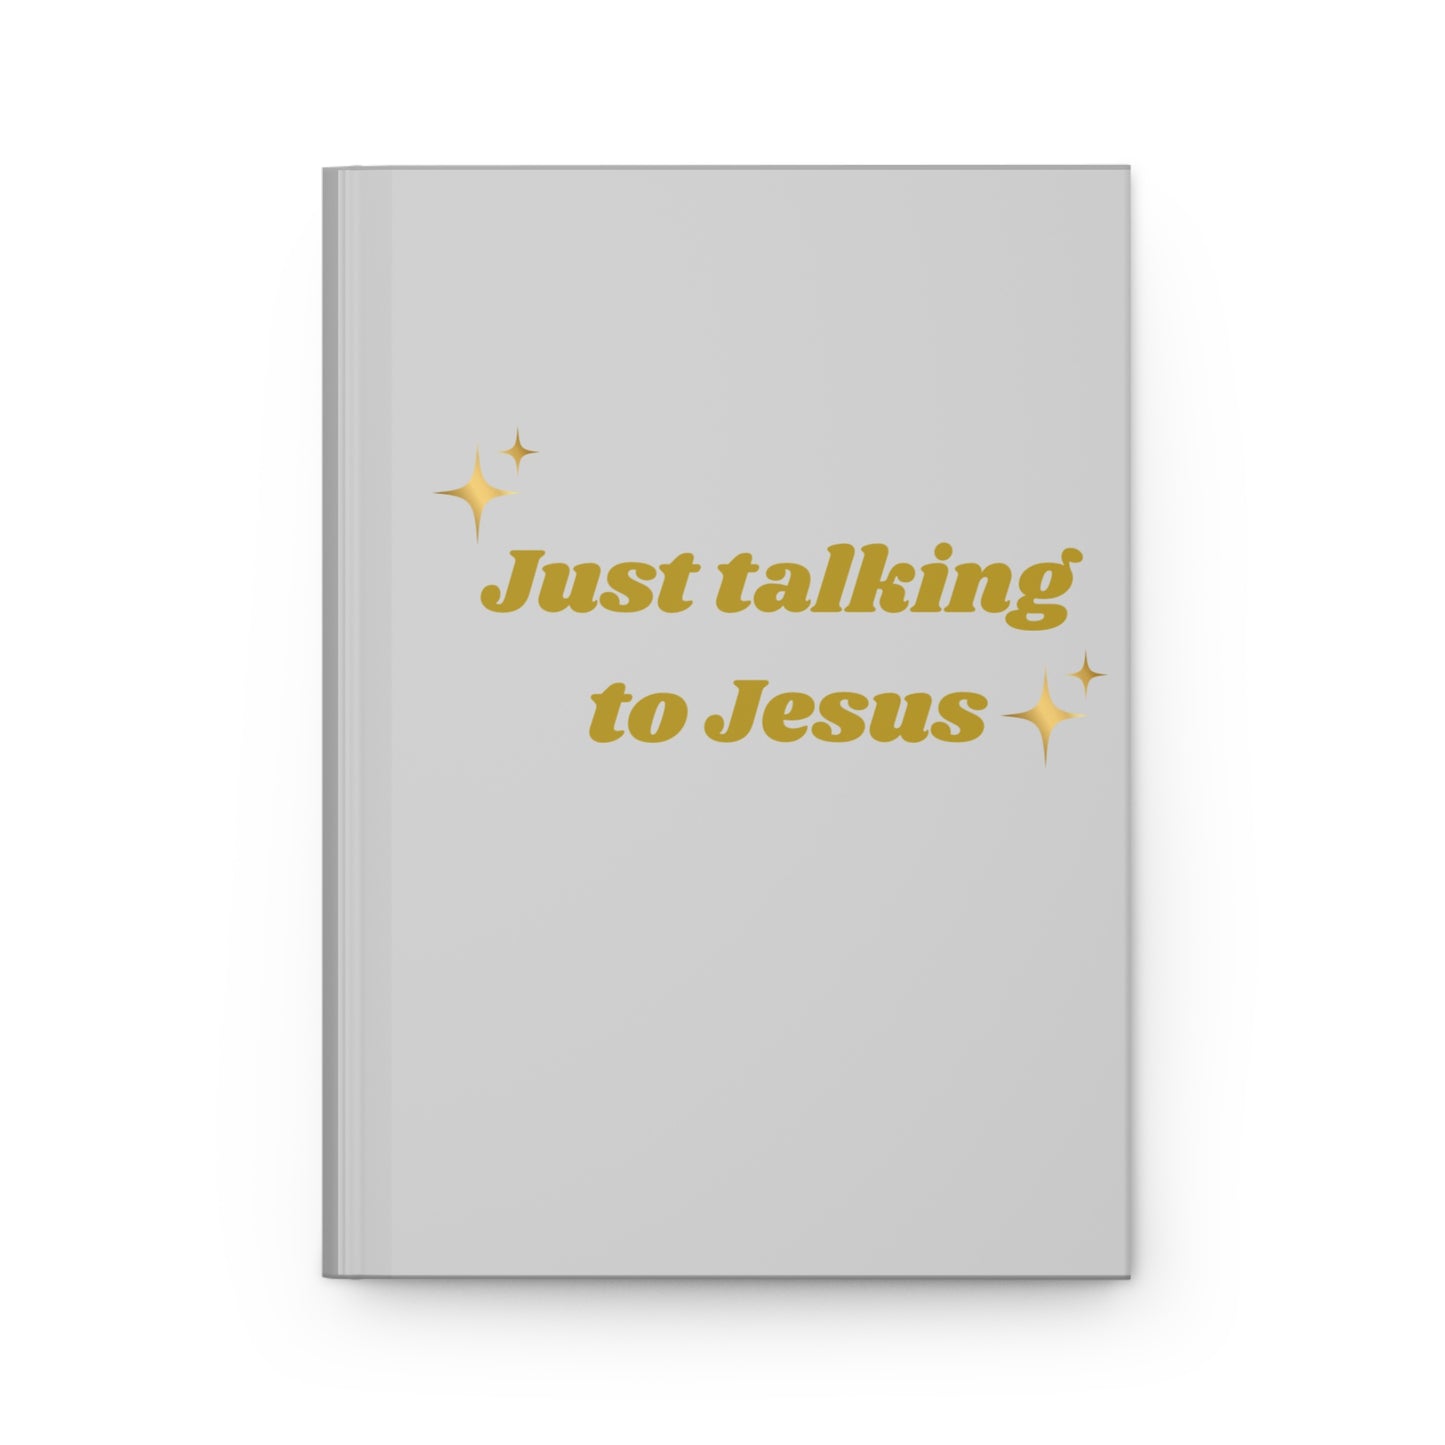 Just talking to Jesus Hardcover Journal Matte